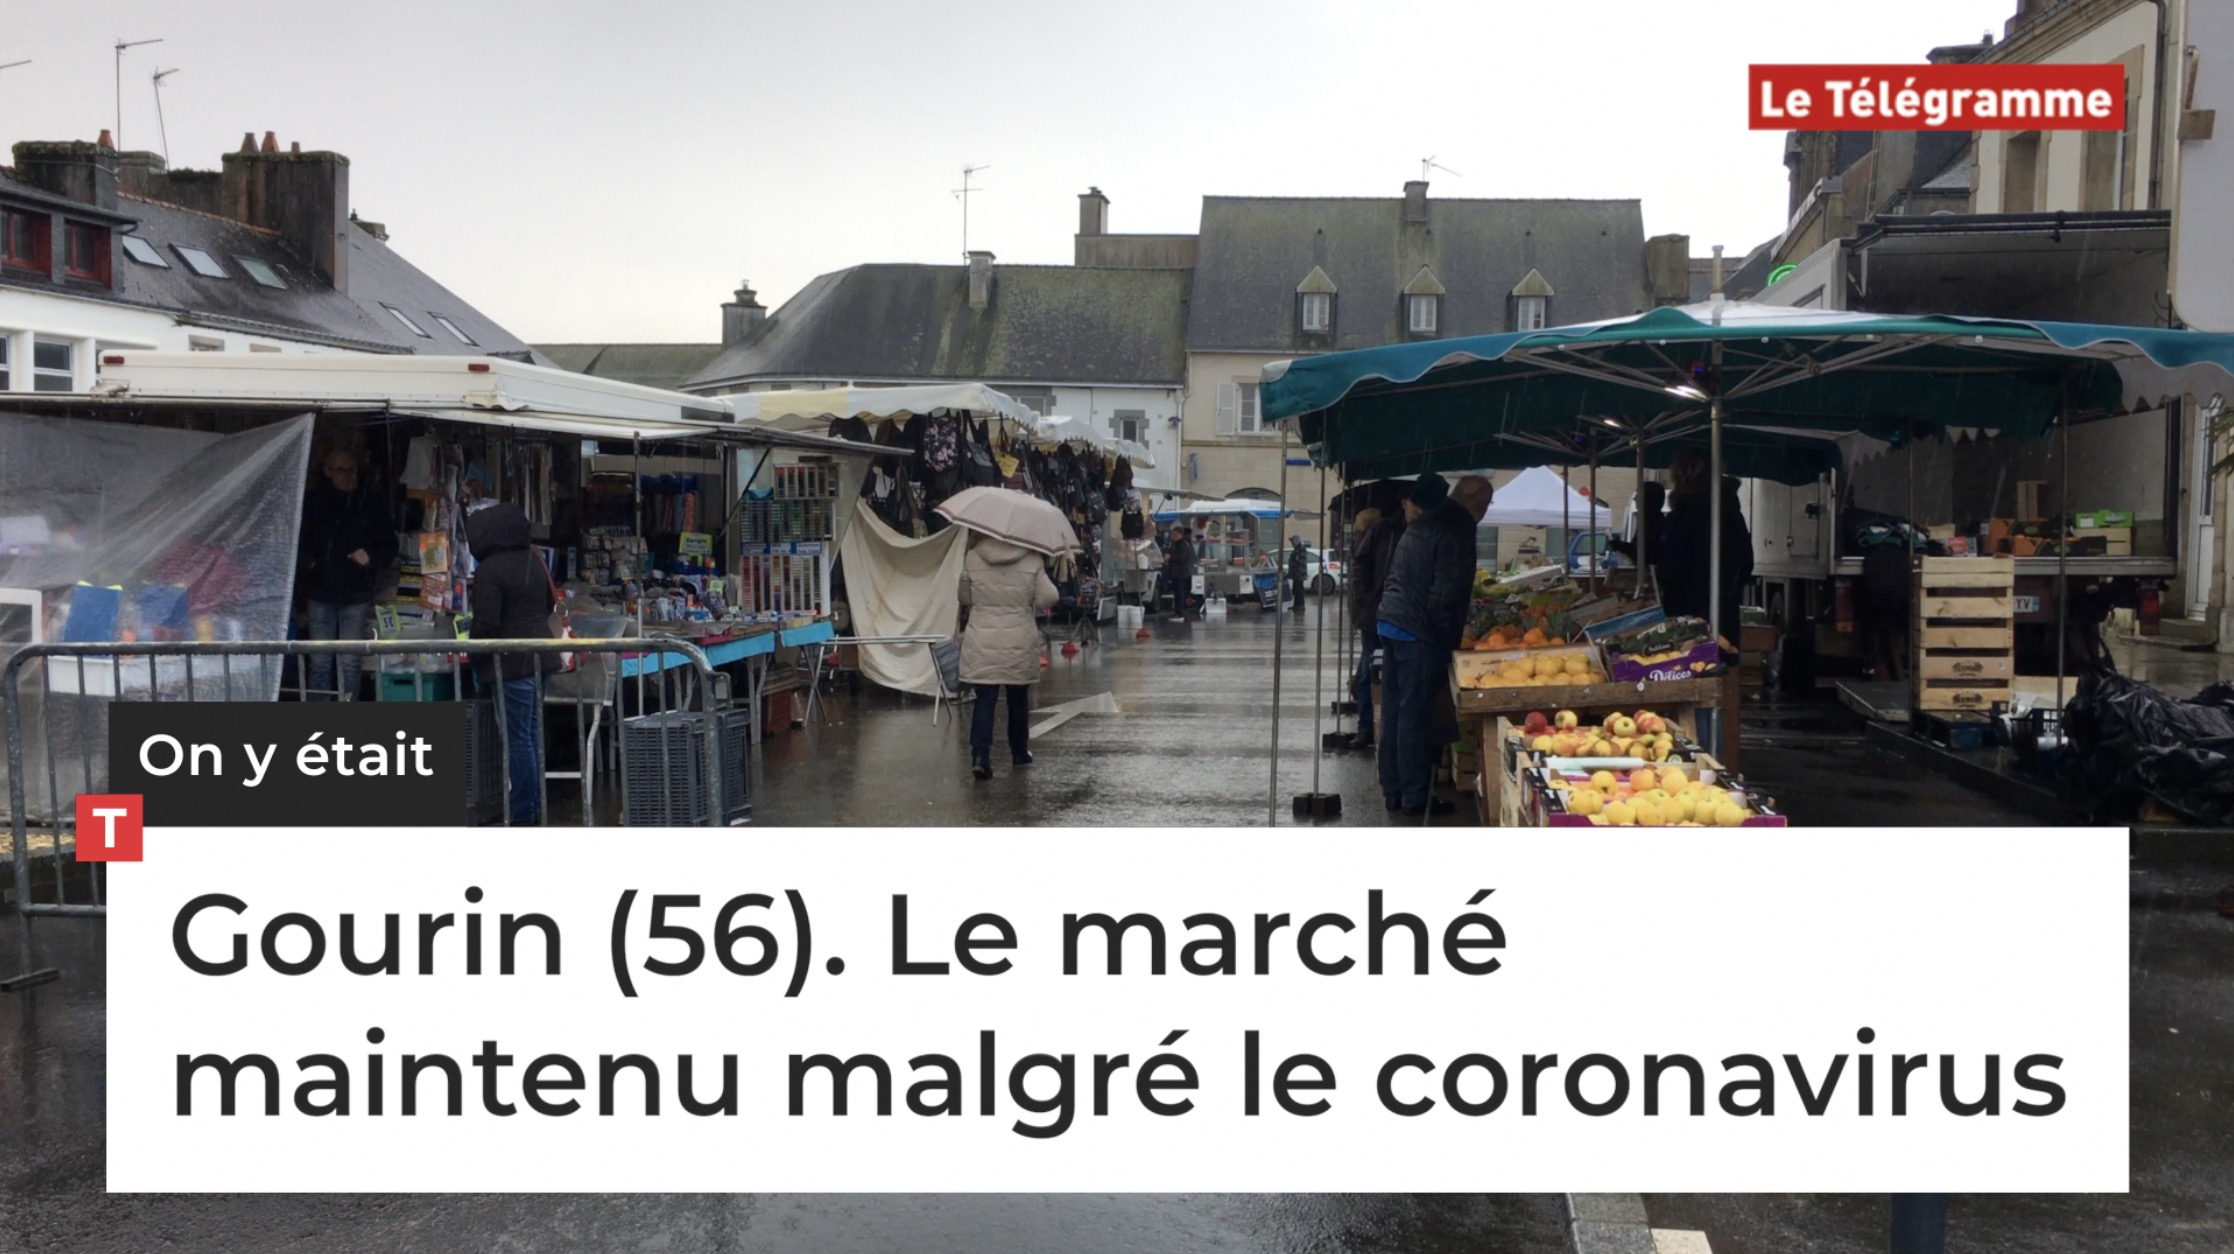 Gourin (56). Le marché maintenu malgré le coronavirus (Le Télégramme)